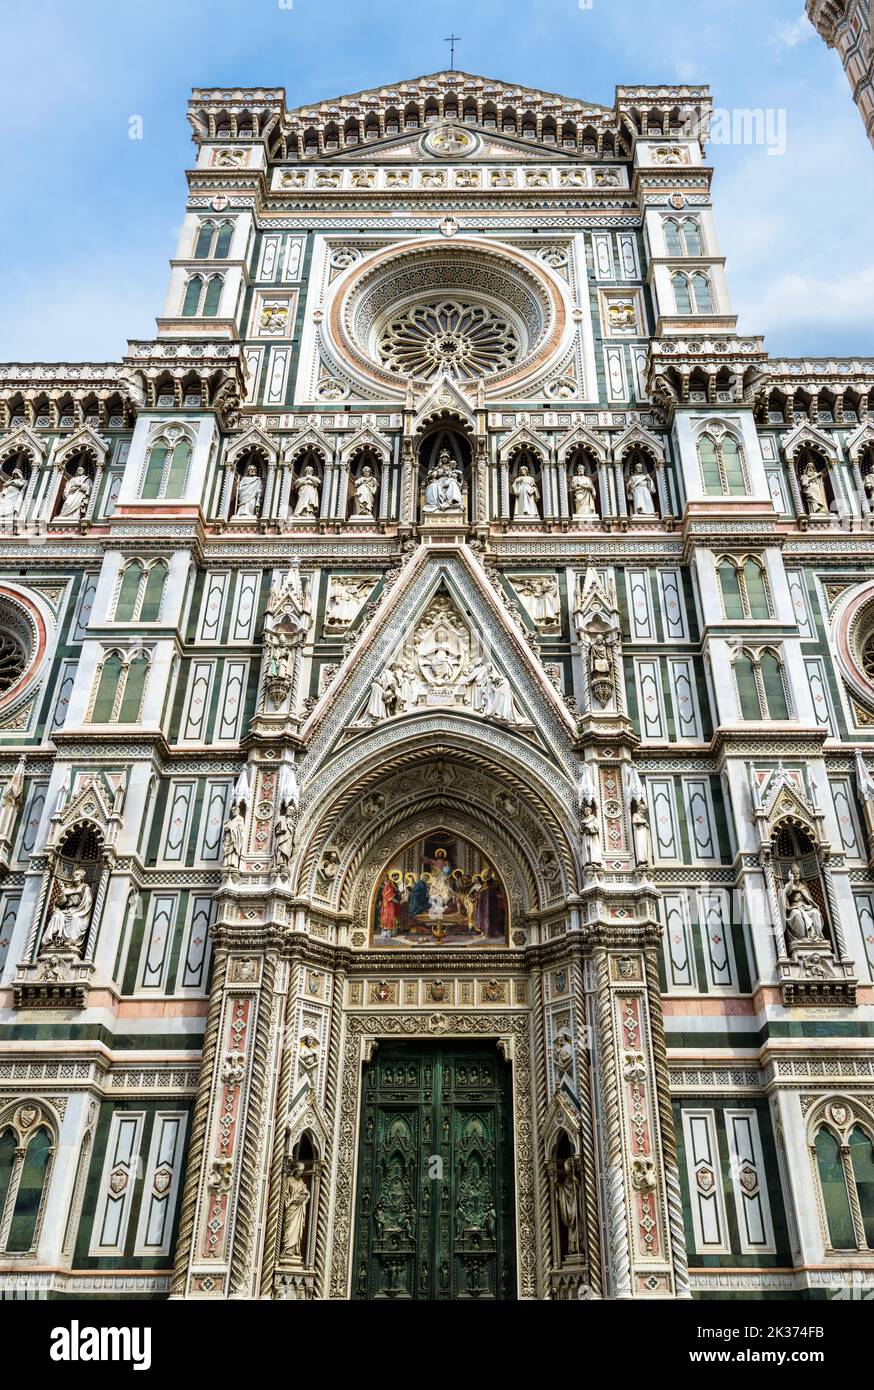 Duomo o Basilica di Santa Maria del Fiore, vista vertical, Florencia, Italia. La Catedral de Santa María de las Flores es un punto de referencia de Florencia. Tema de ornat Foto de stock